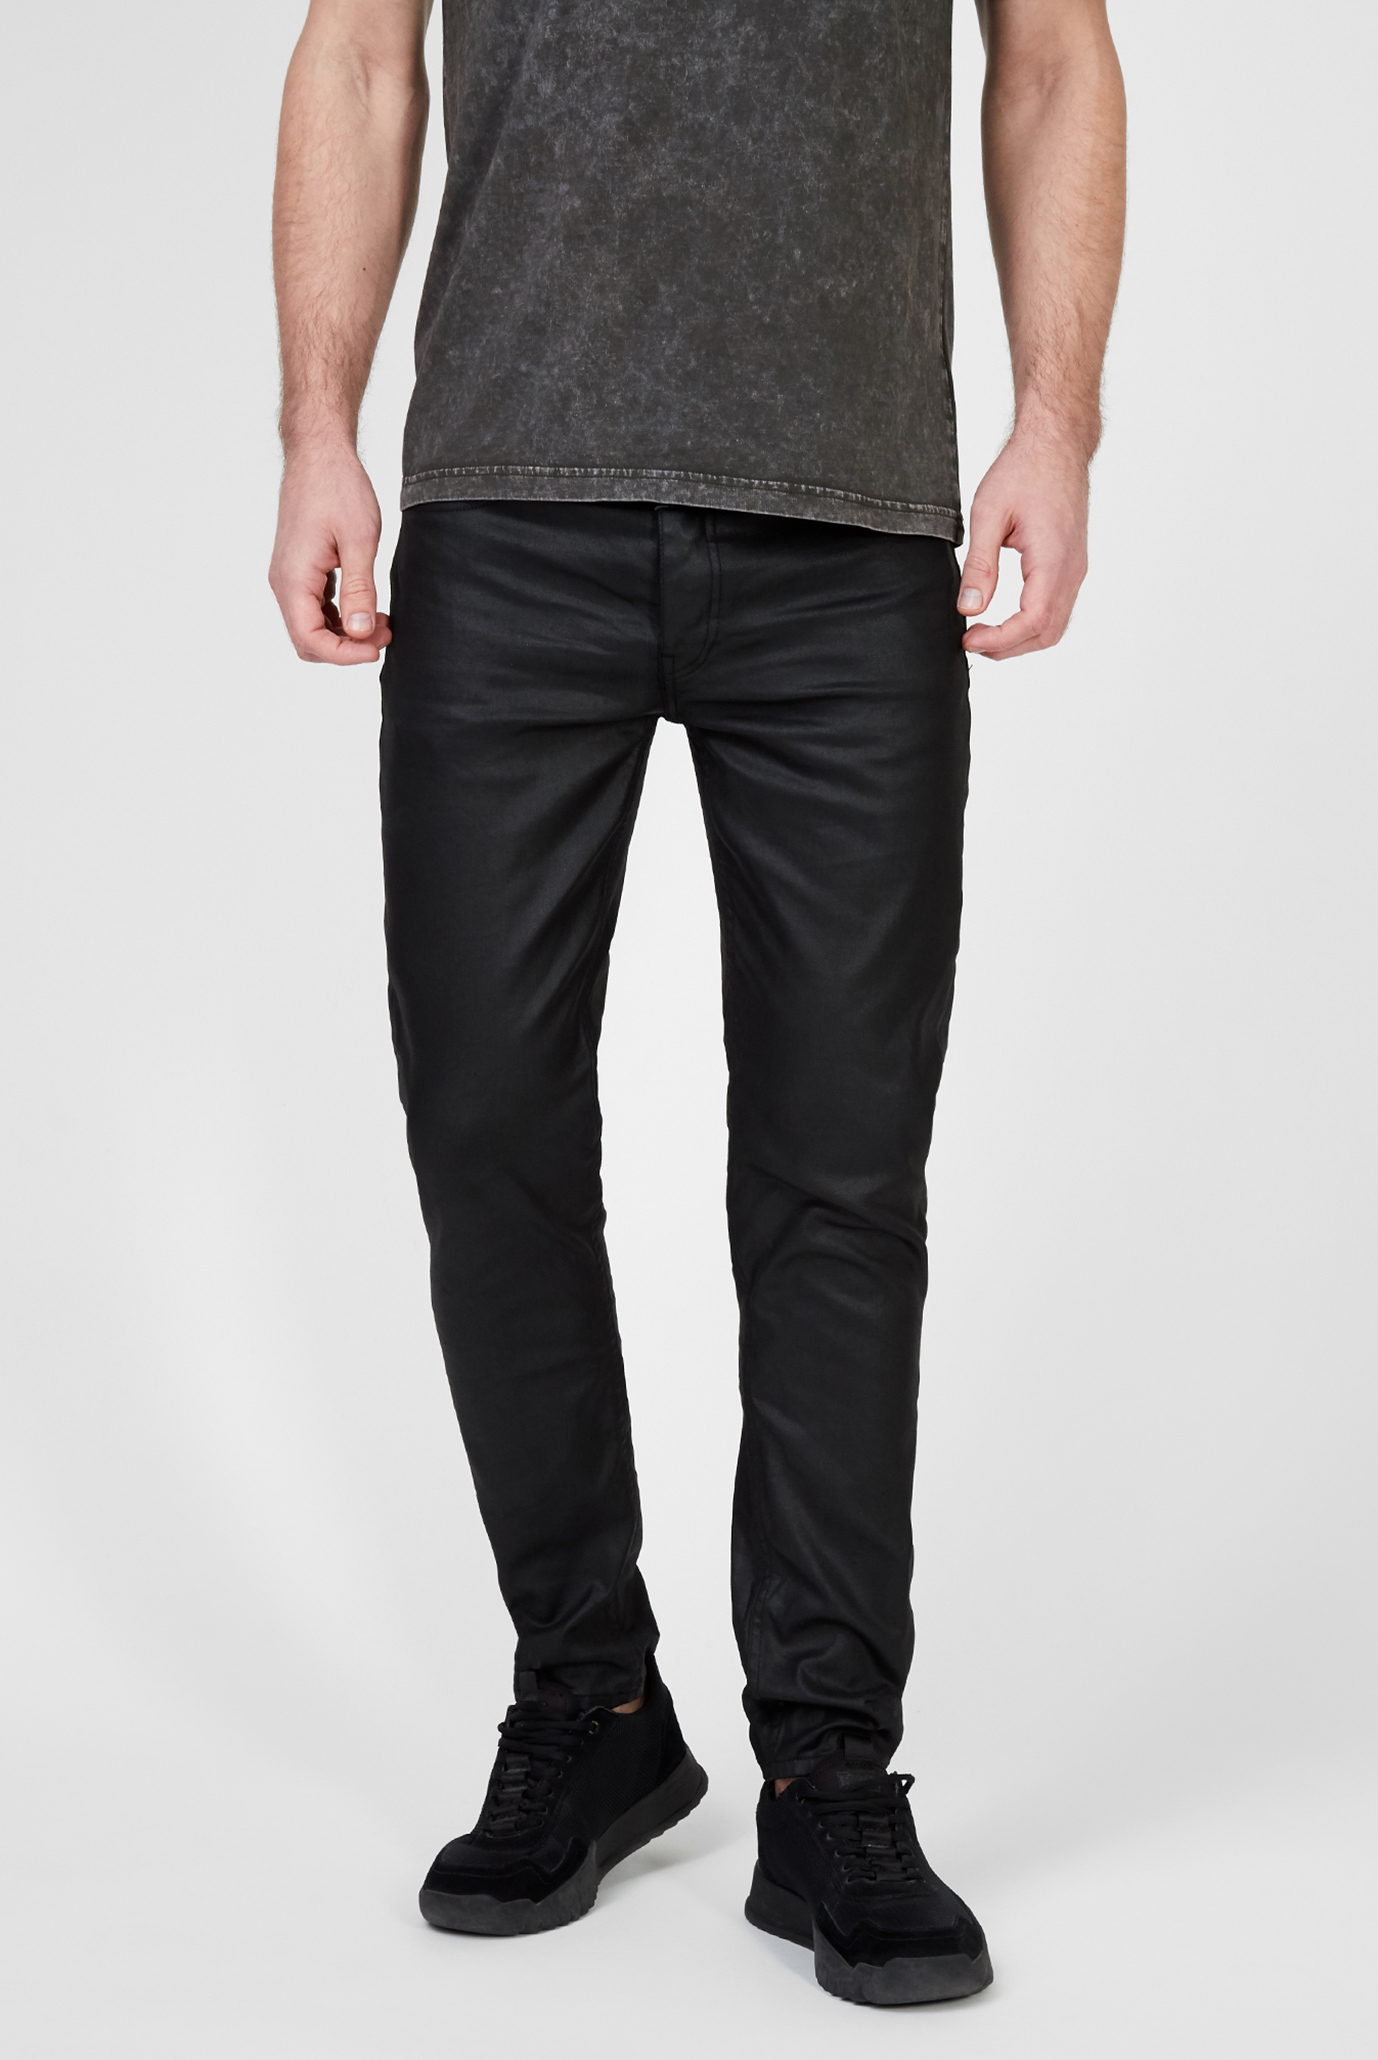 Мужские черные джинсы Morty 8691 coated 1